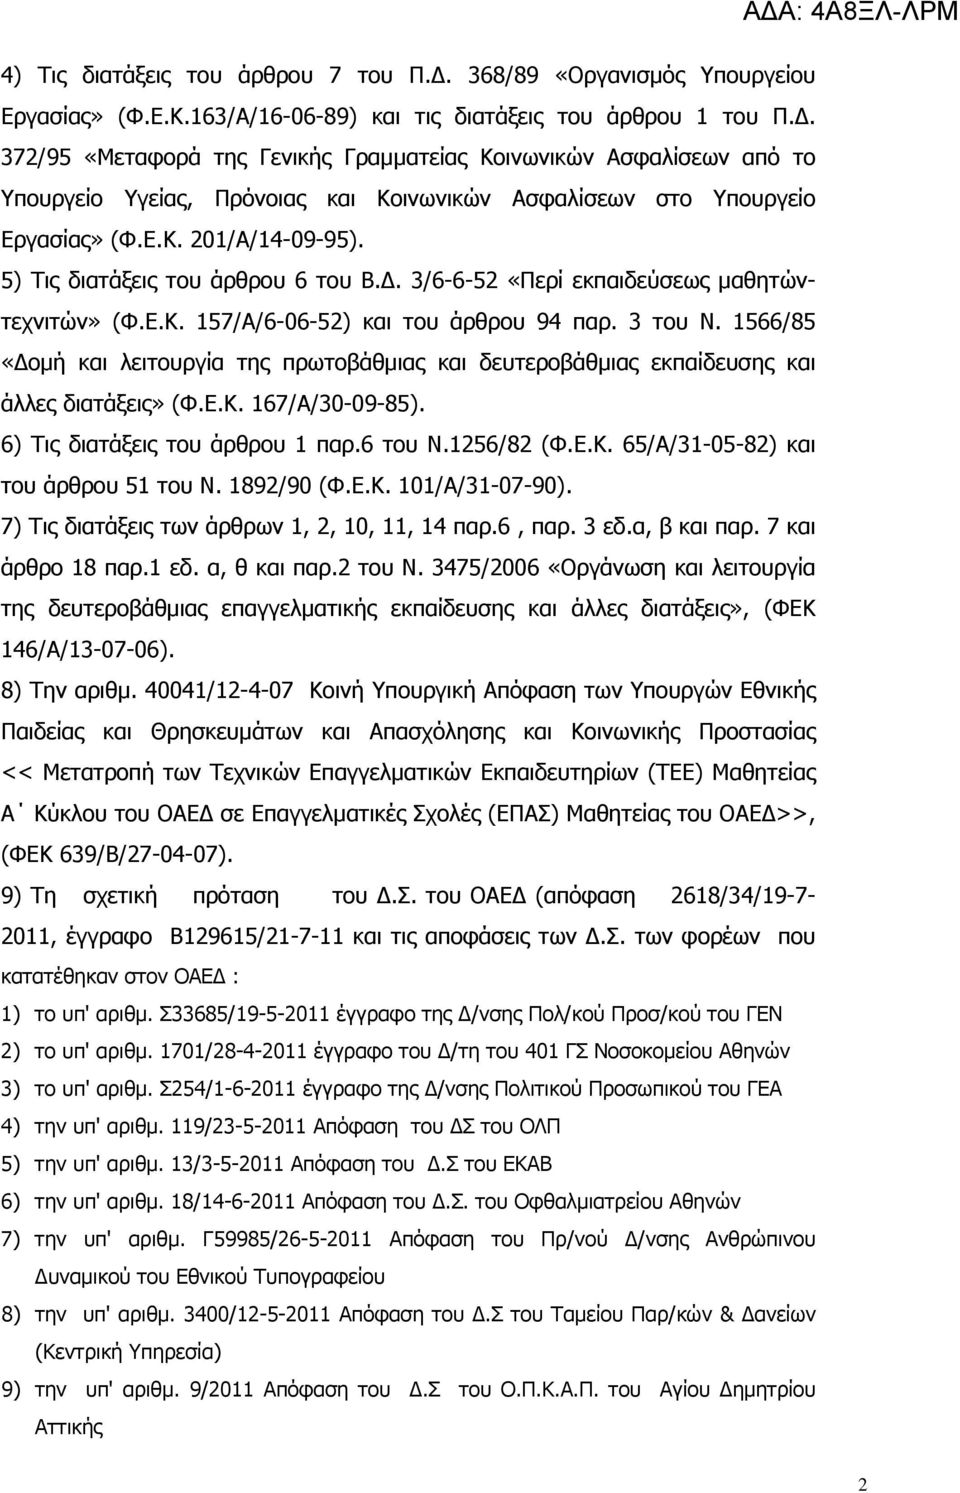 1566/85 «Δομή και λειτουργία της πρωτοβάθμιας και δευτεροβάθμιας εκπαίδευσης και άλλες διατάξεις» (Φ.Ε.Κ. 167/Α/30-09-85). 6) Τις διατάξεις του άρθρου 1 παρ.6 του Ν.1256/82 (Φ.Ε.Κ. 65/Α/31-05-82) και του άρθρου 51 του Ν.